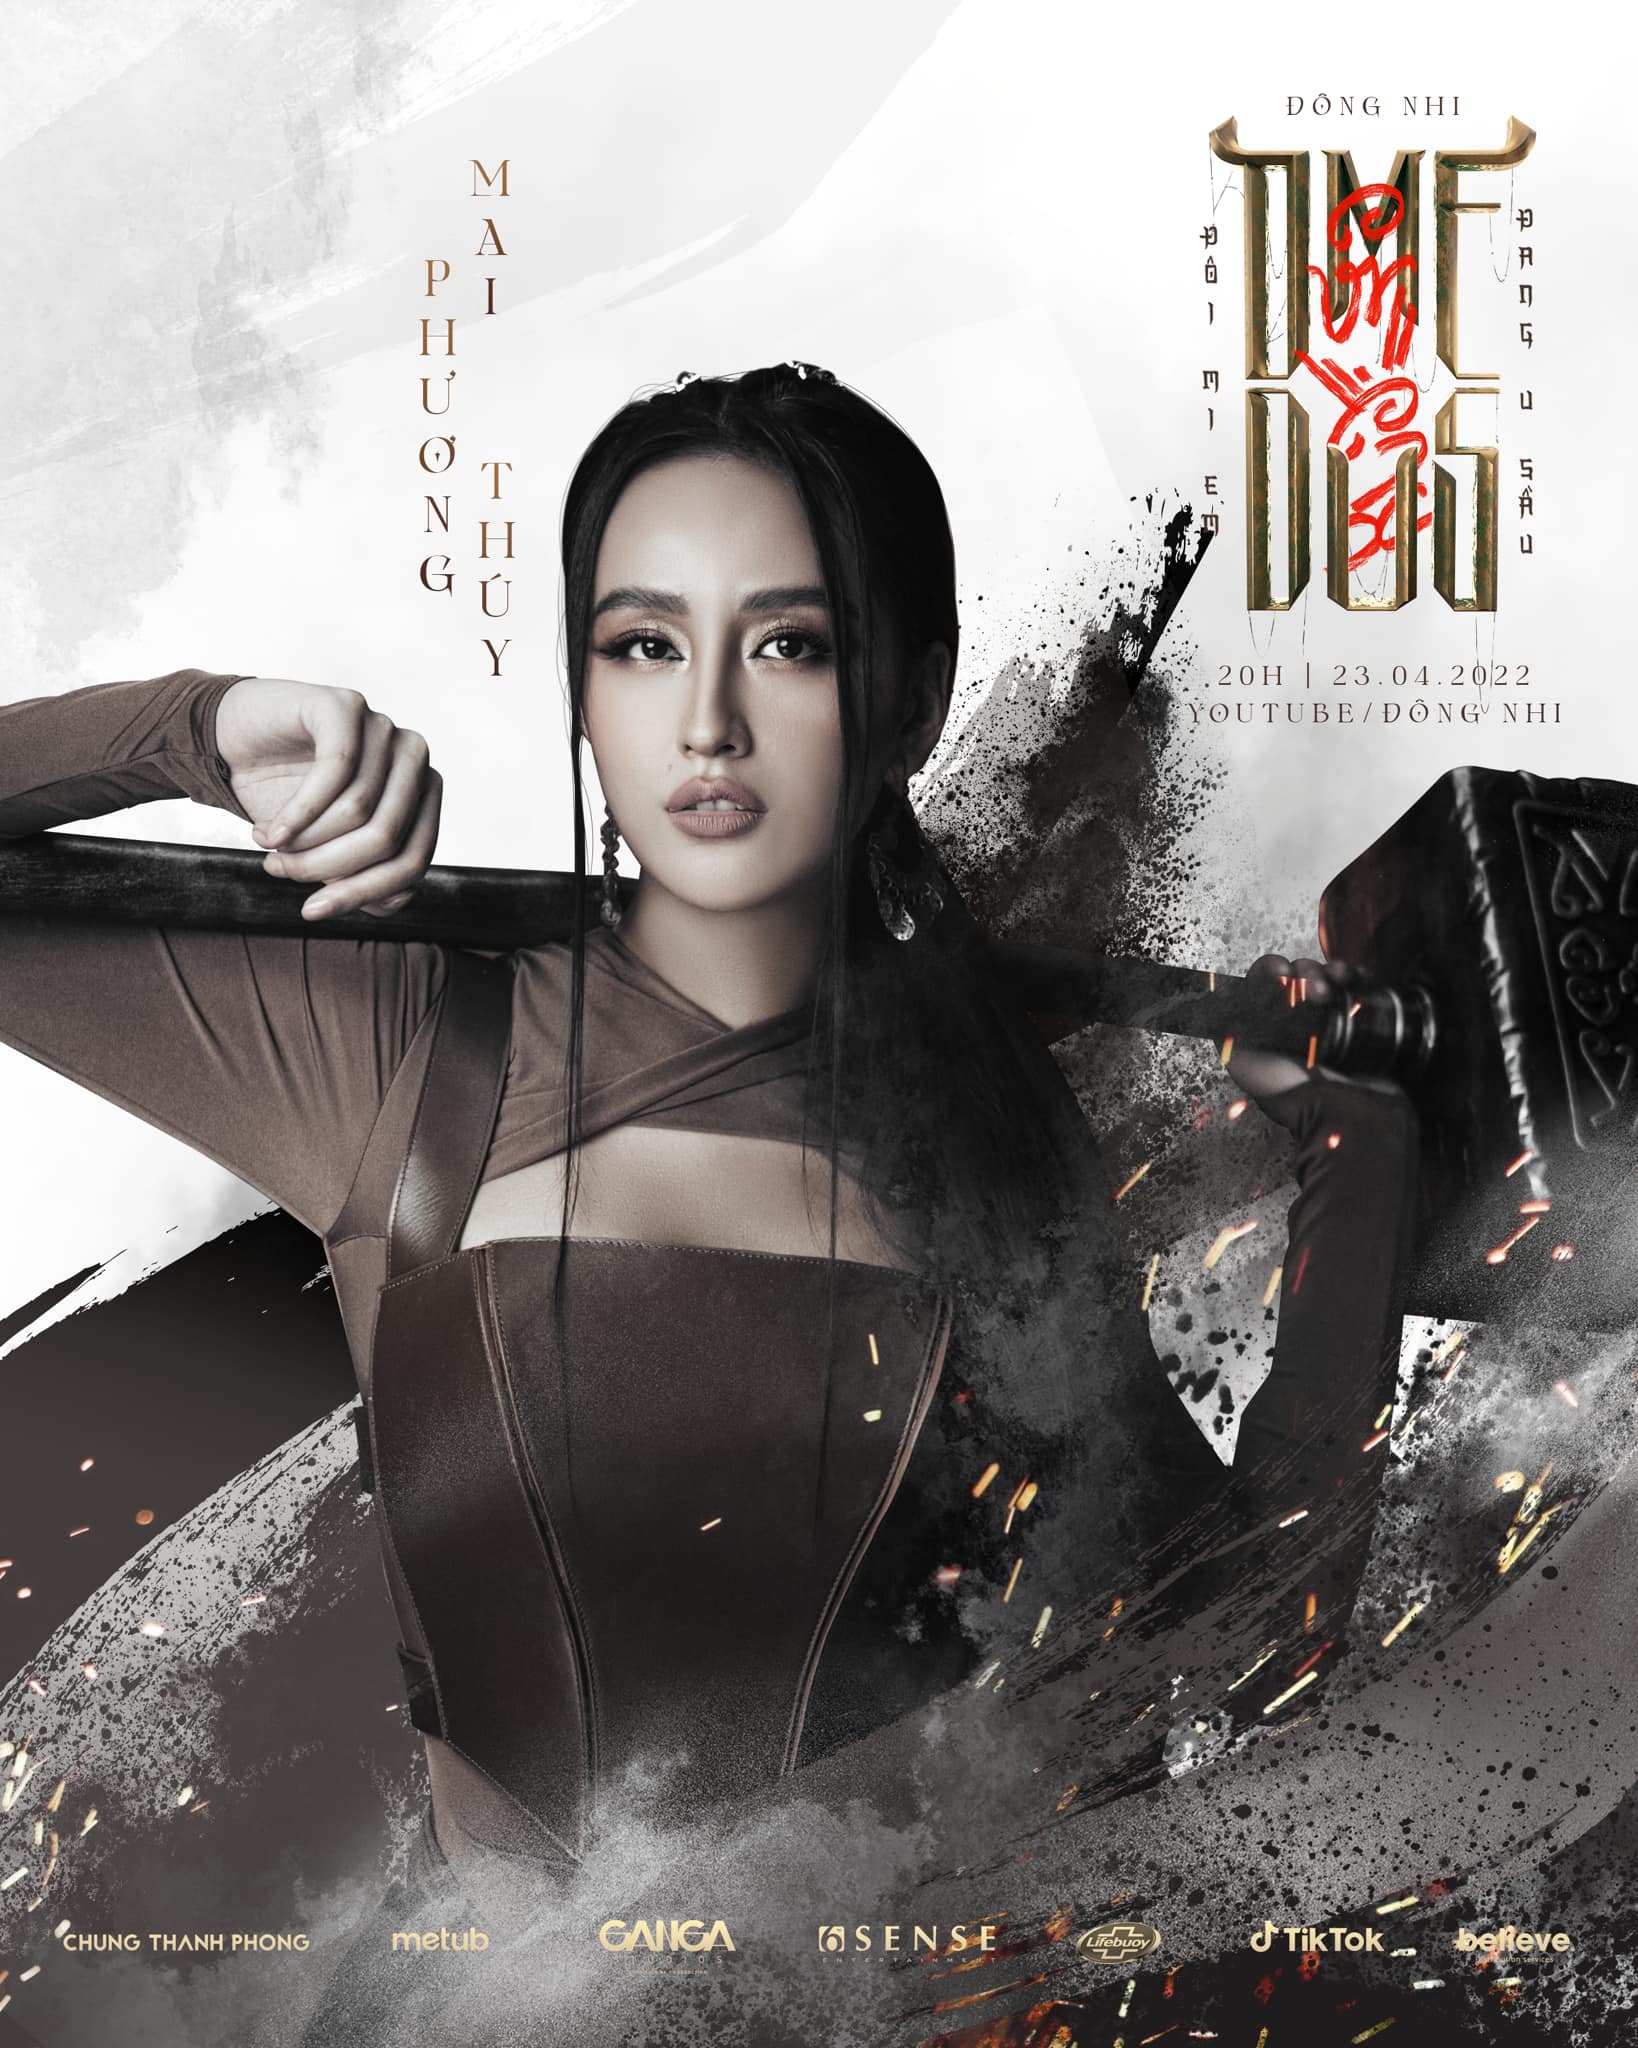 Sau vai diễn nghiện ngập thủa 18, Mai Phương Thúy vào vai nữ sát thủ trong MV ca nhạc - Ảnh 1